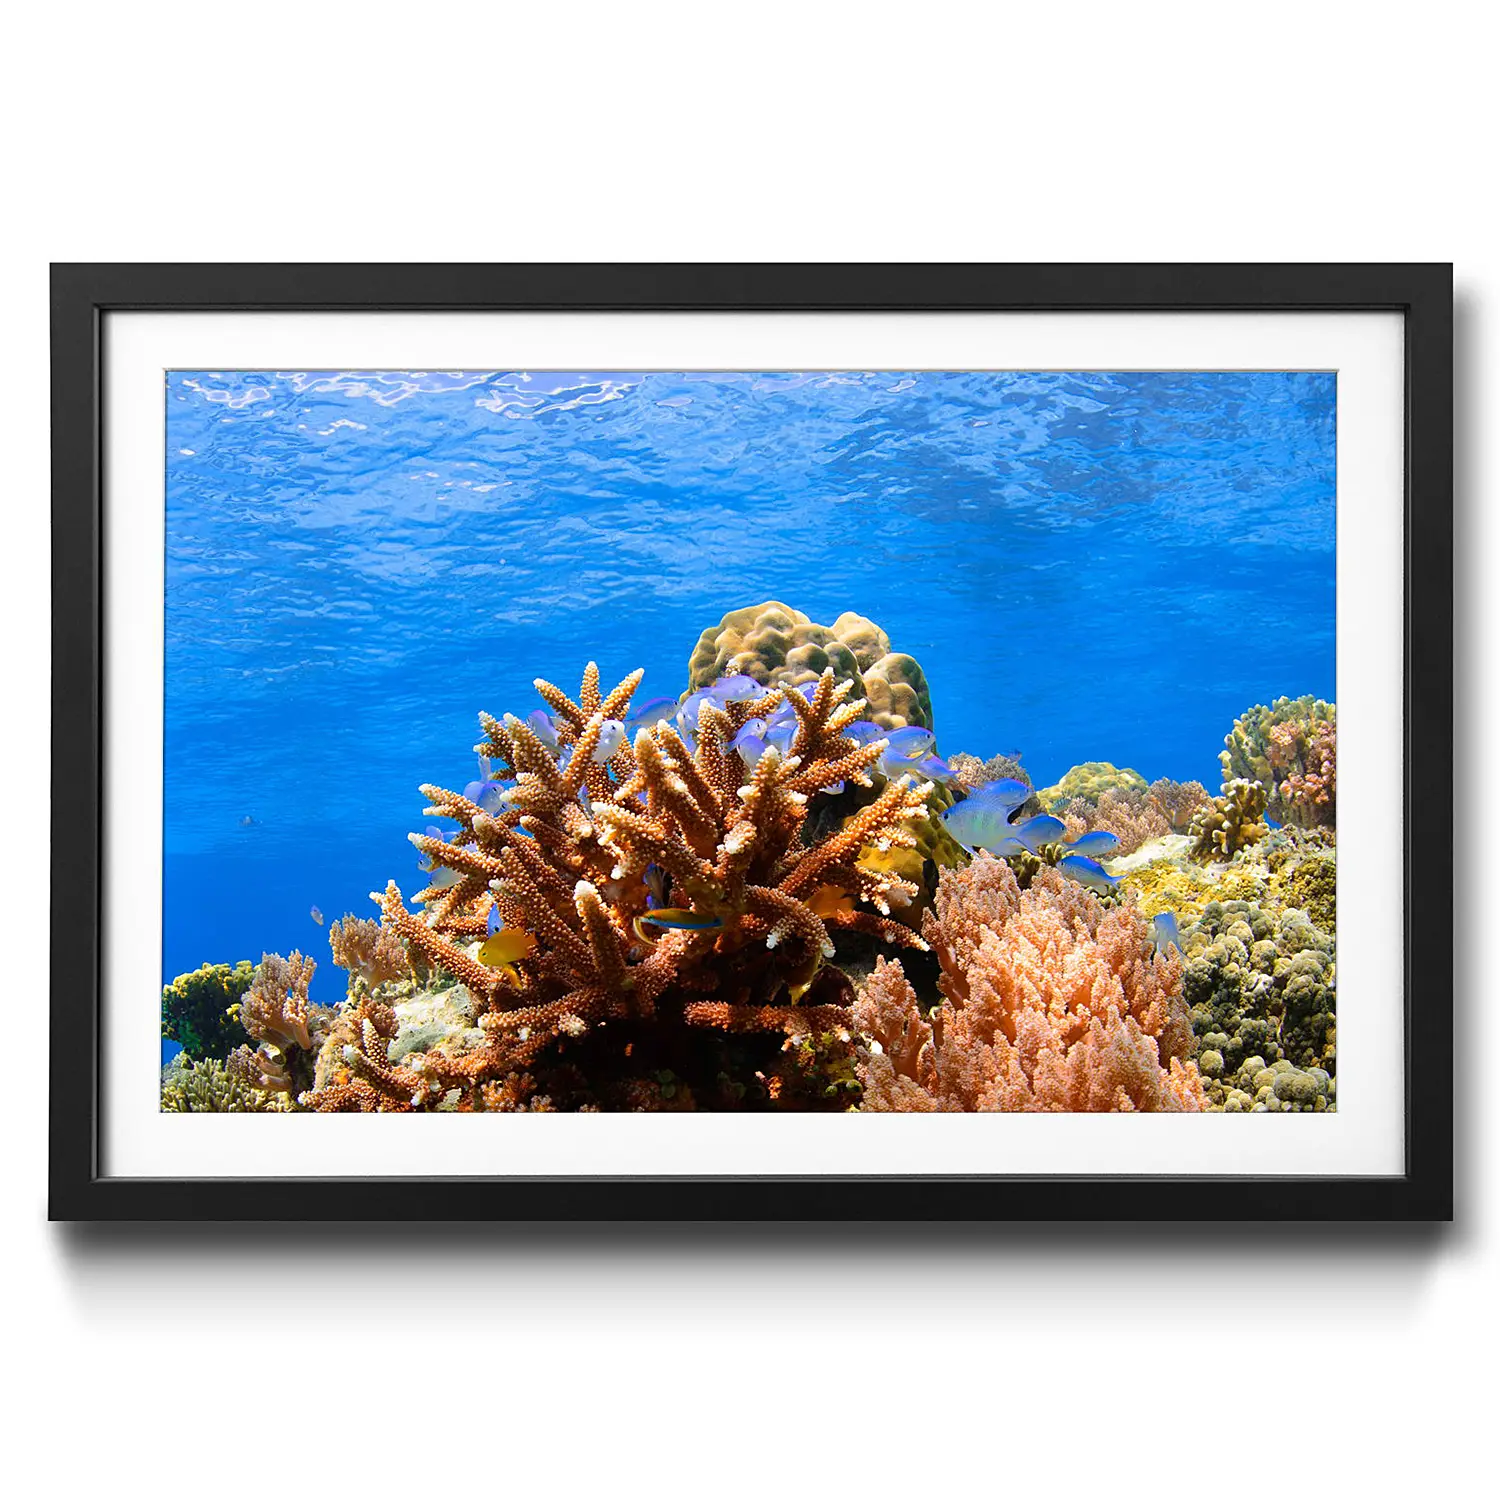 Gerahmtes Bild Corals Reef | Bilder